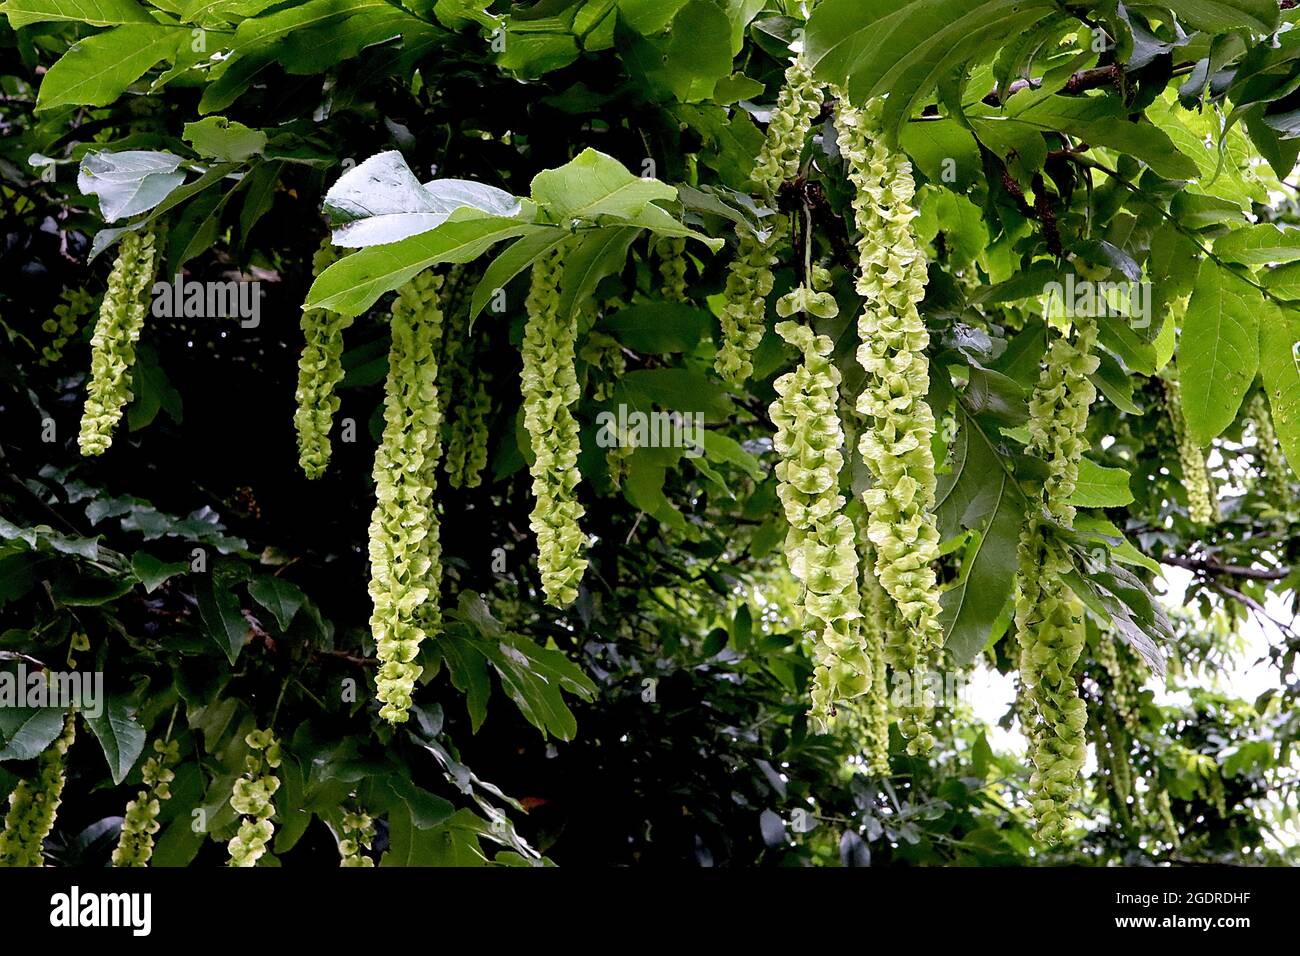 Pterocarya fraxinifolia kaukasische Flügelnuss – hängende Trauben von flachen hellgrünen Samenkapseln, Juli, England, Großbritannien Stockfoto